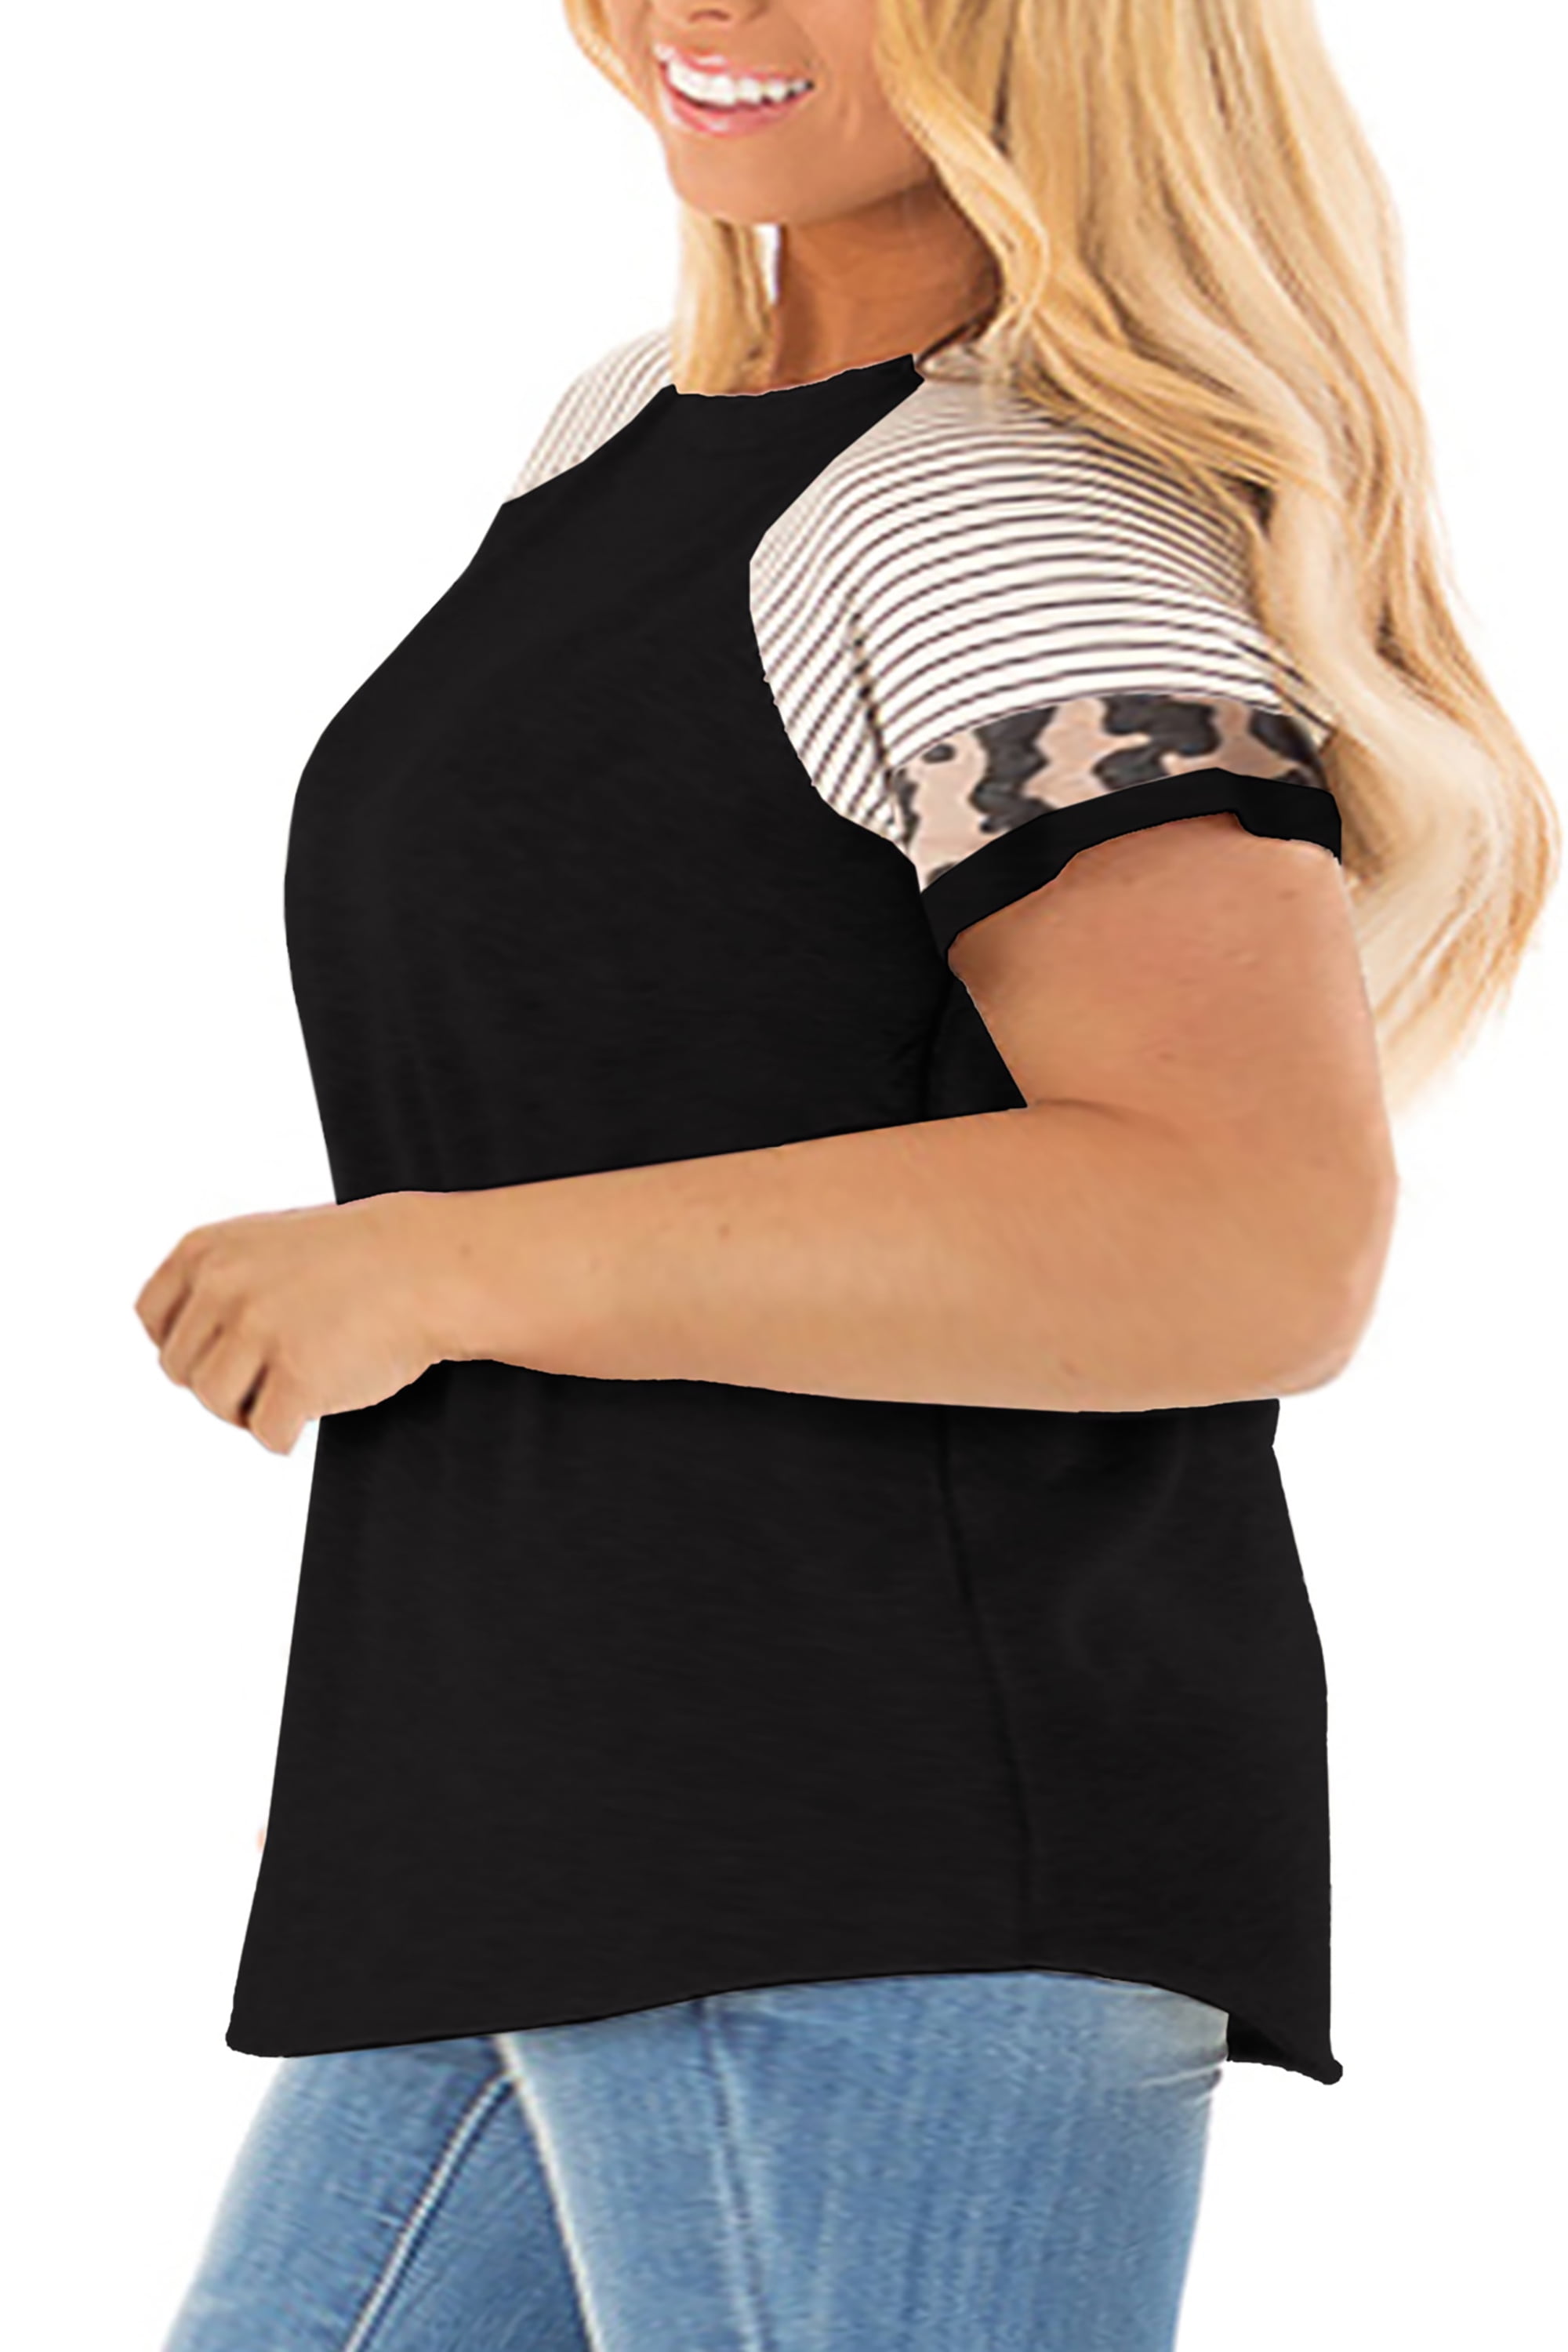 LANREMON Womens Plus Size Tops Leopard Tunic Tops Crewneck T Shirts Short Sleeve Color Block Blouse 